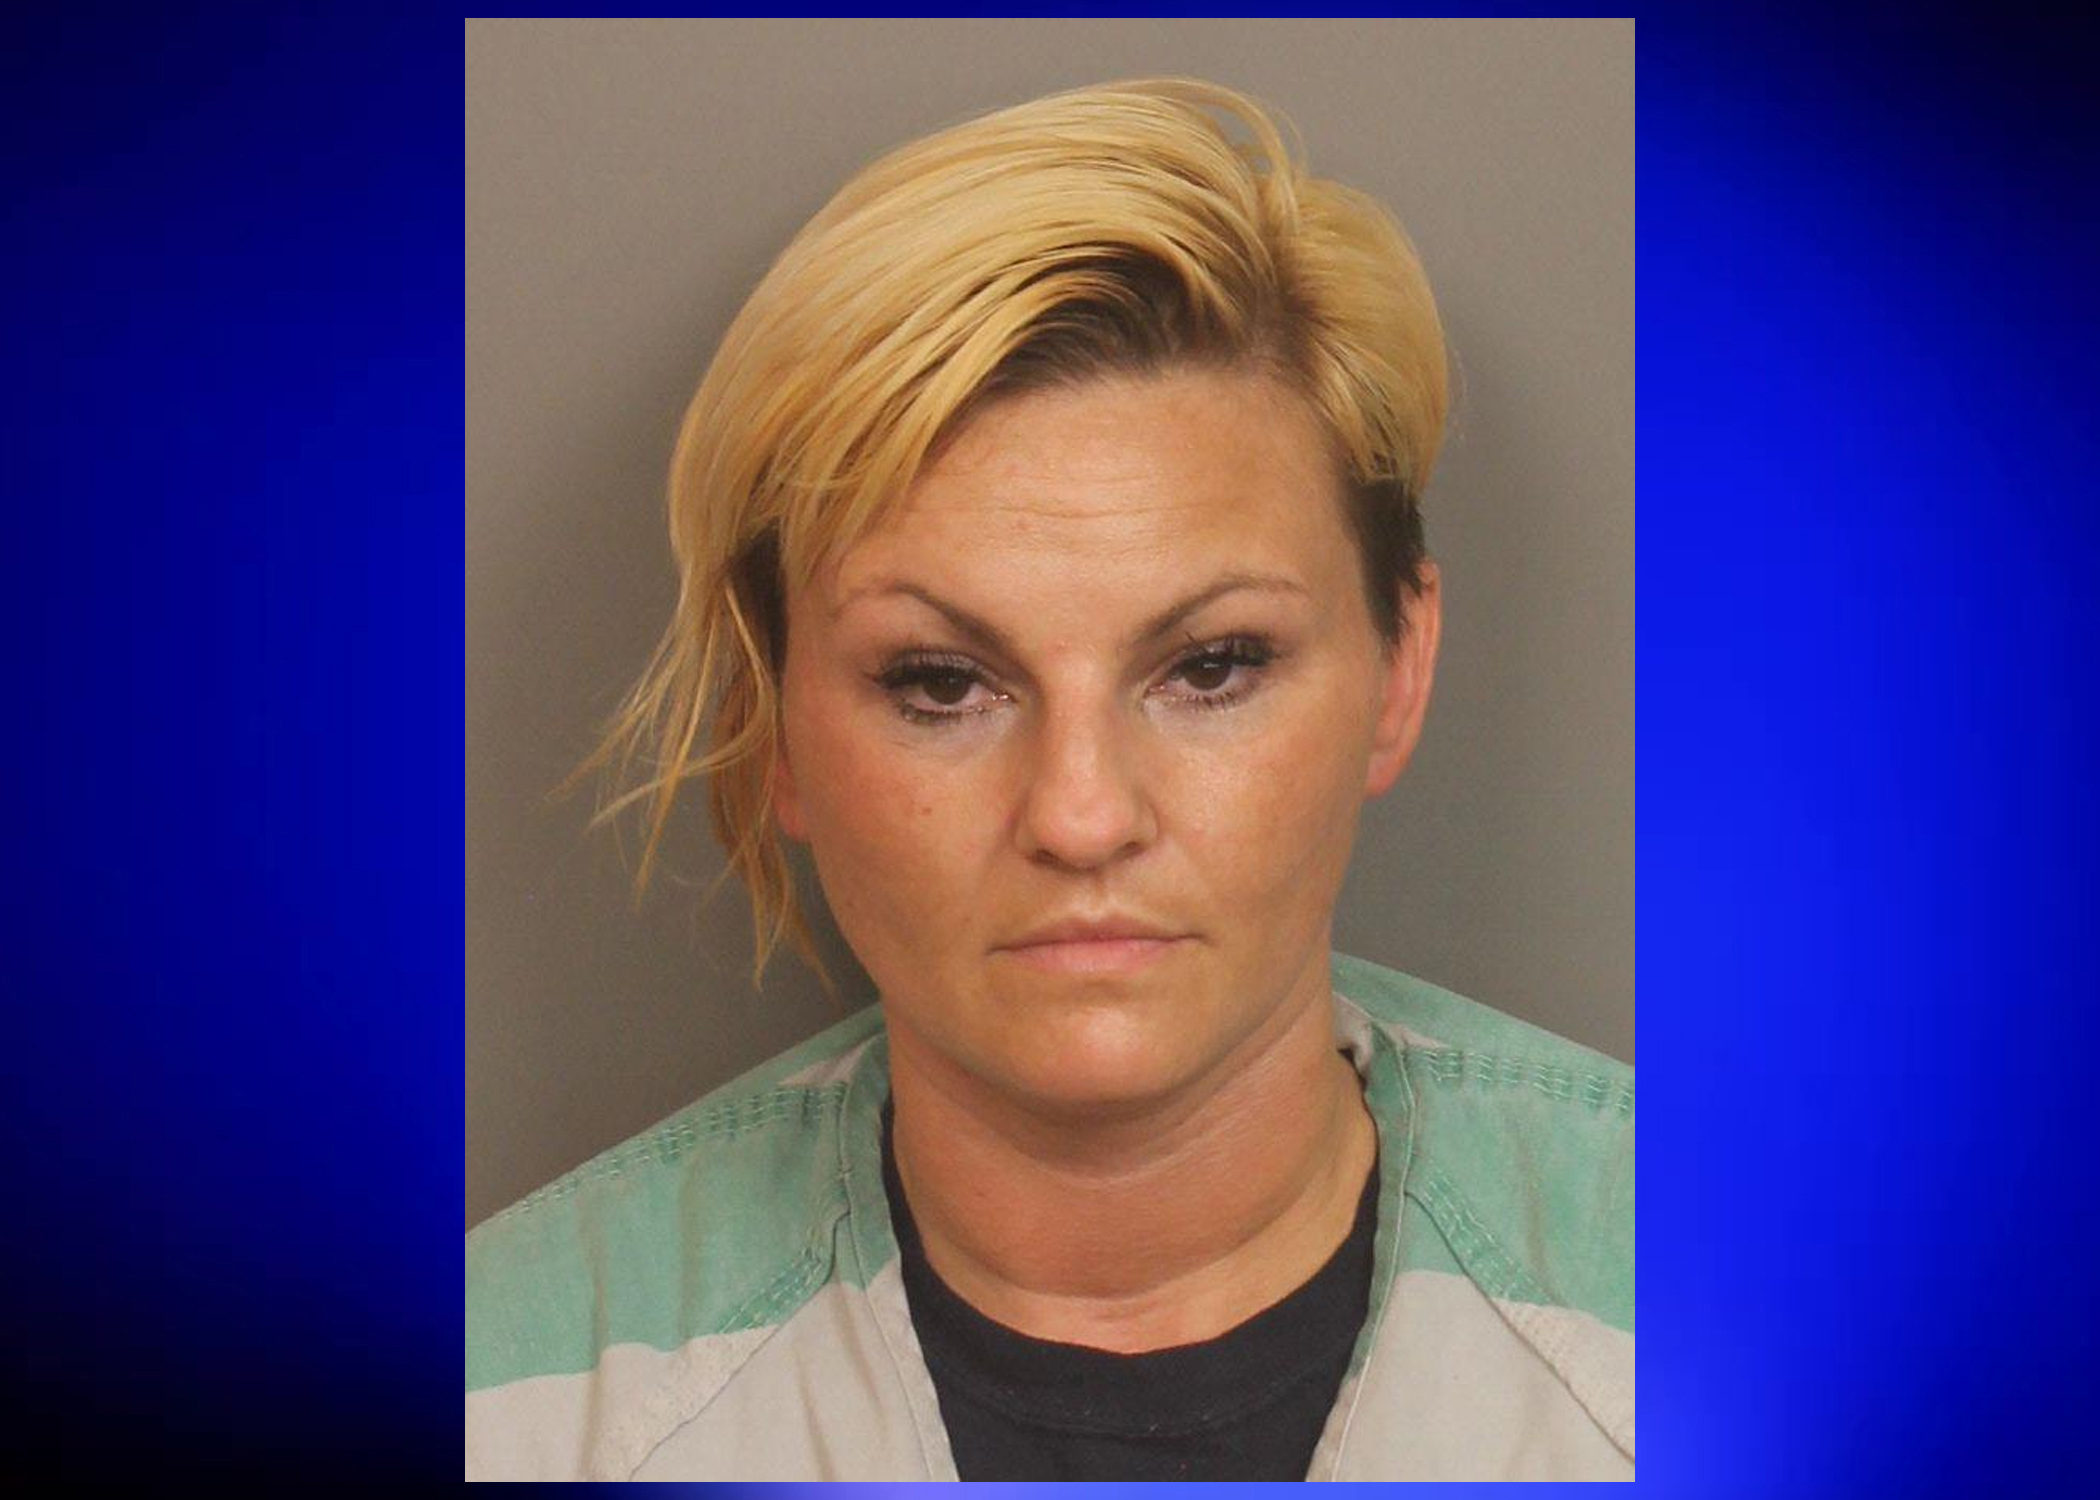 Woman arrested in Pinson held on $1 million bond after drug arrest